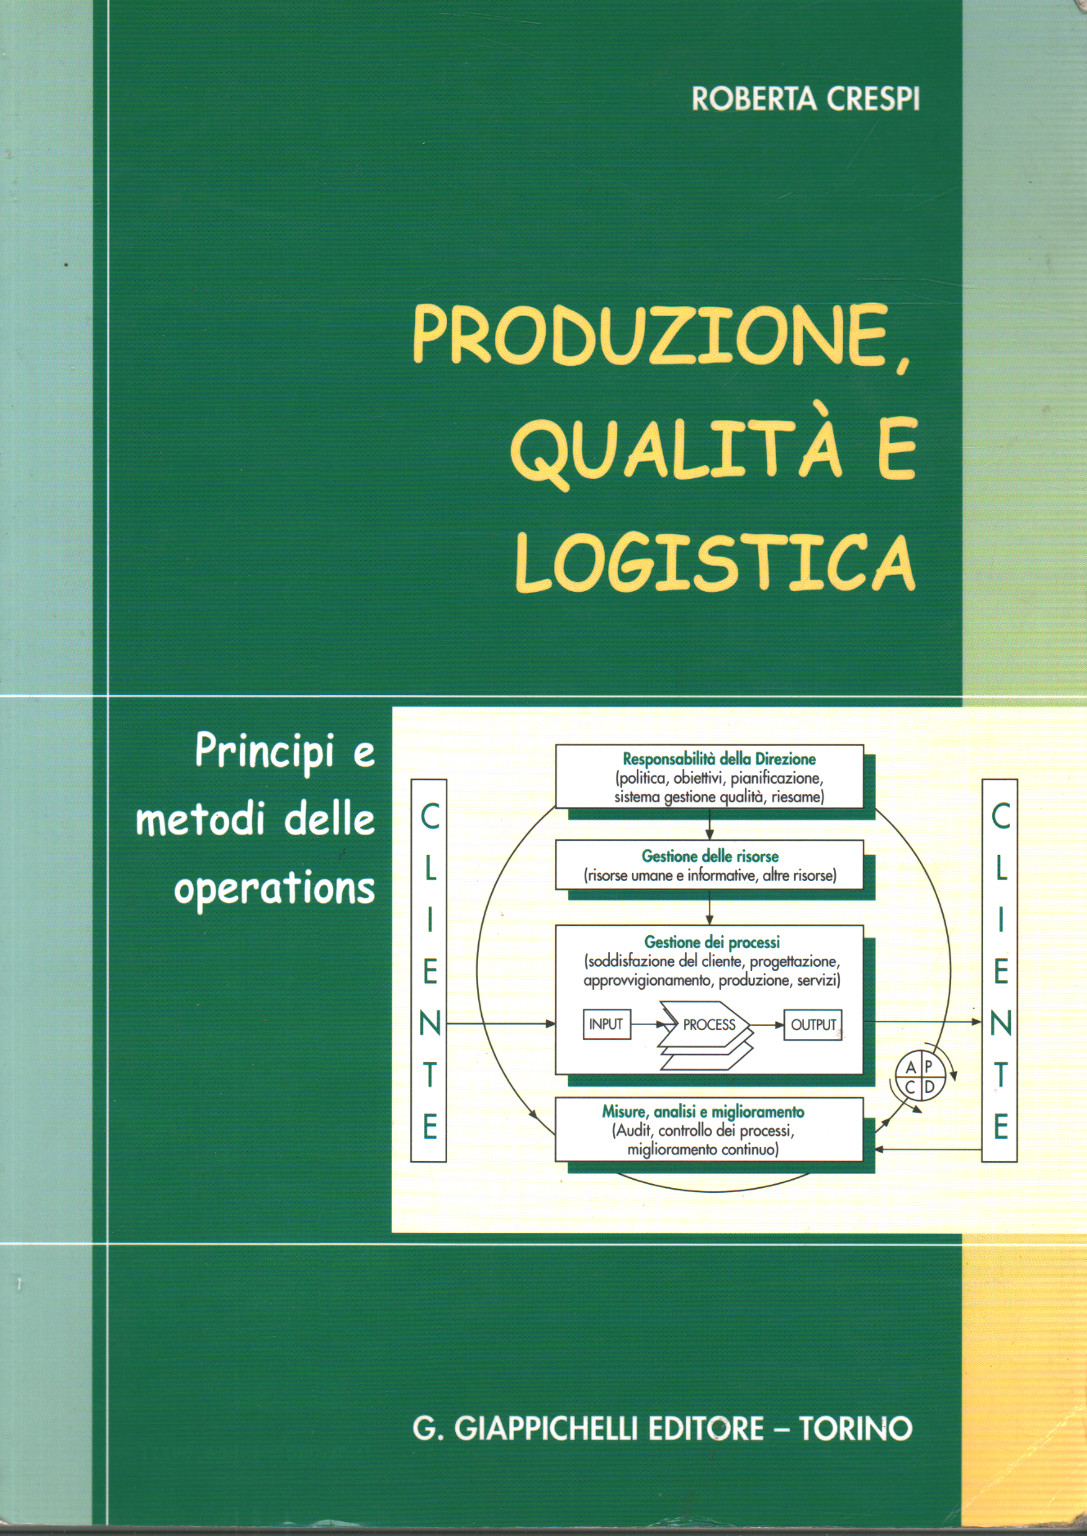 Produzione, qualità e logistica, s.a.